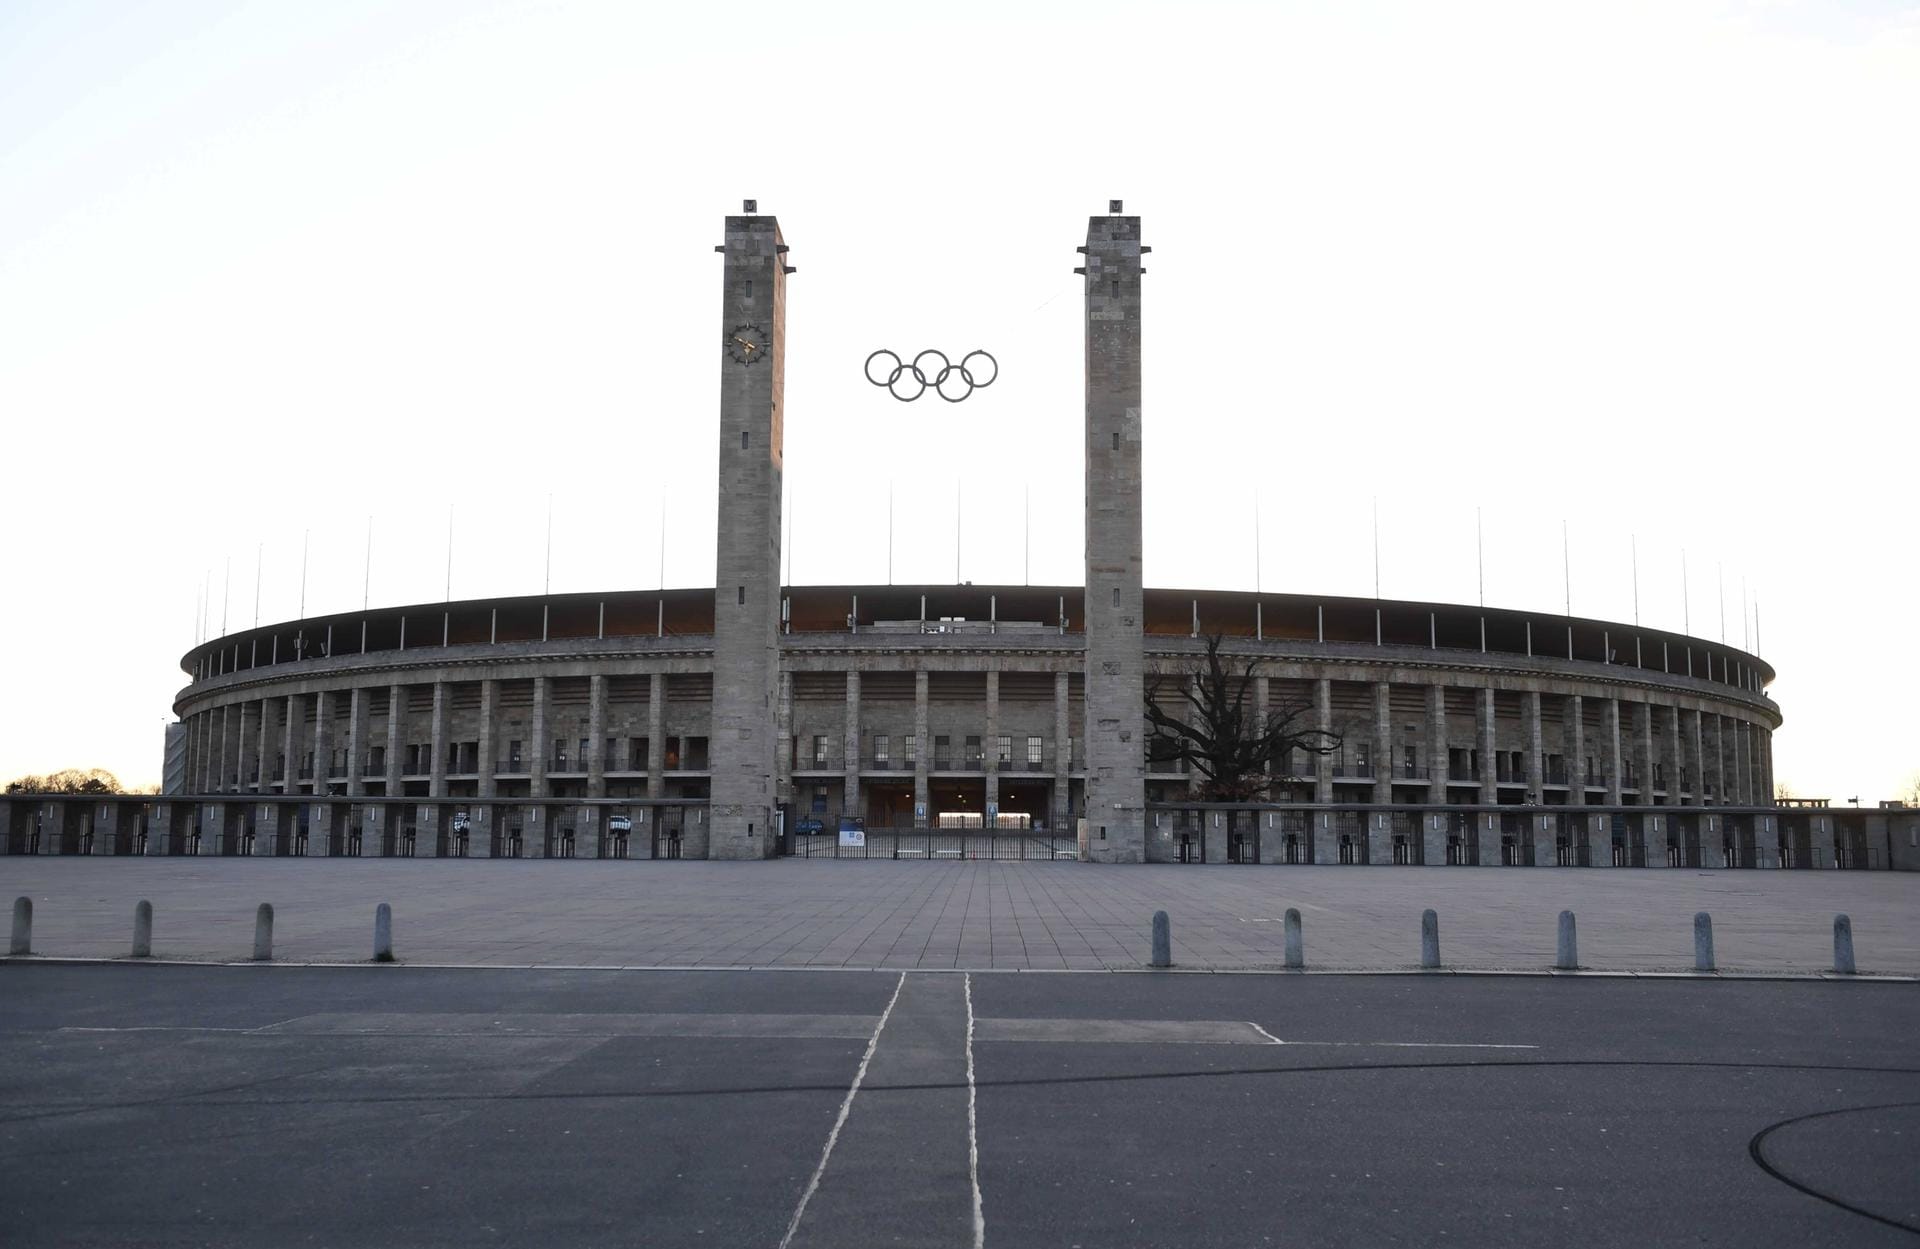 Das Olympiastadion ist aktuell geschlossen und leer. Am Samstag hätte hier das Stadtderby zwischen Hertha BSC und Union Berlin stattgefunden. Auch wenn die Fans zu Hause bleiben mussten, aktiv waren sie trotzdem. Denn bundesweit haben sich Ultras für die Pflegekräfte, Ärzte und andere Helfer eingesetzt.